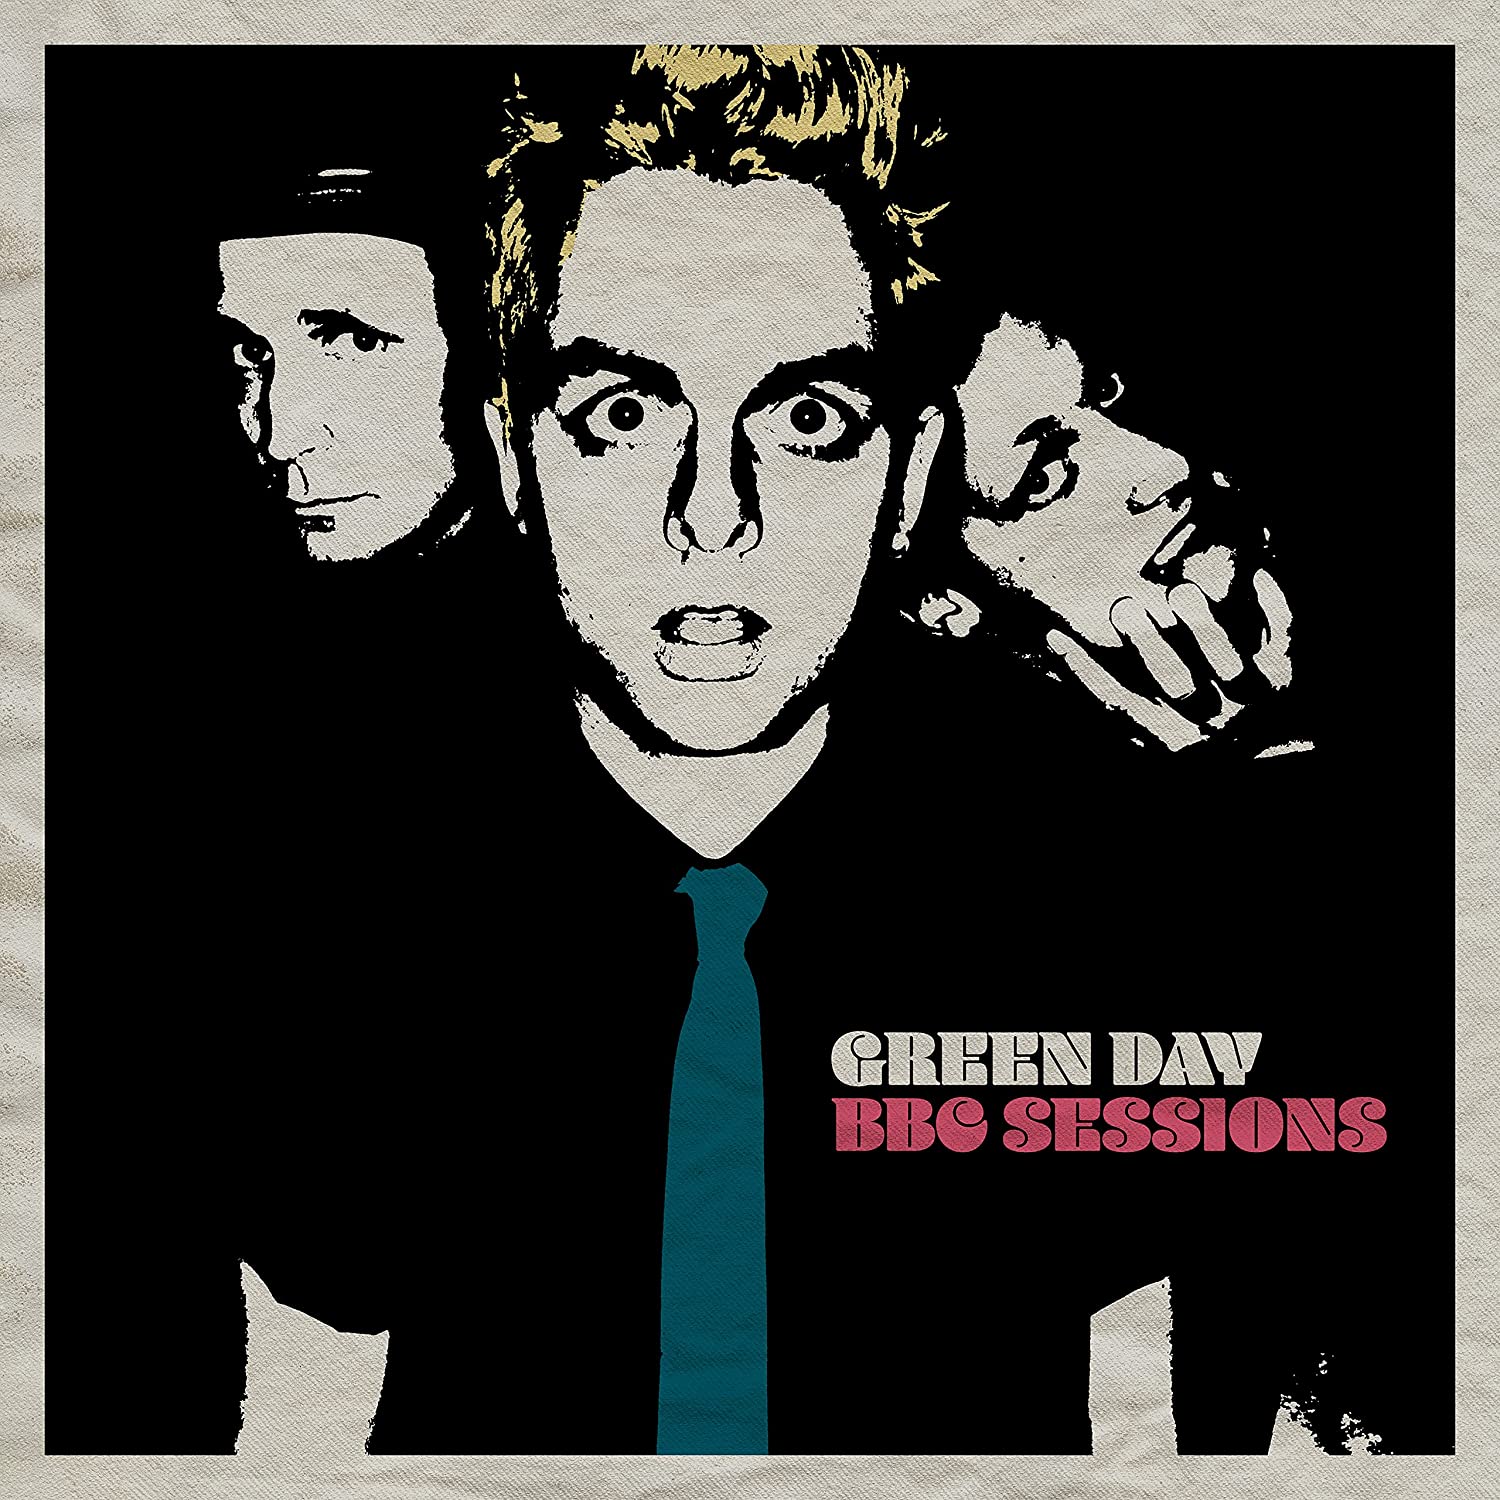 Copertina Vinile 33 giri BBC Sessions di Green Day